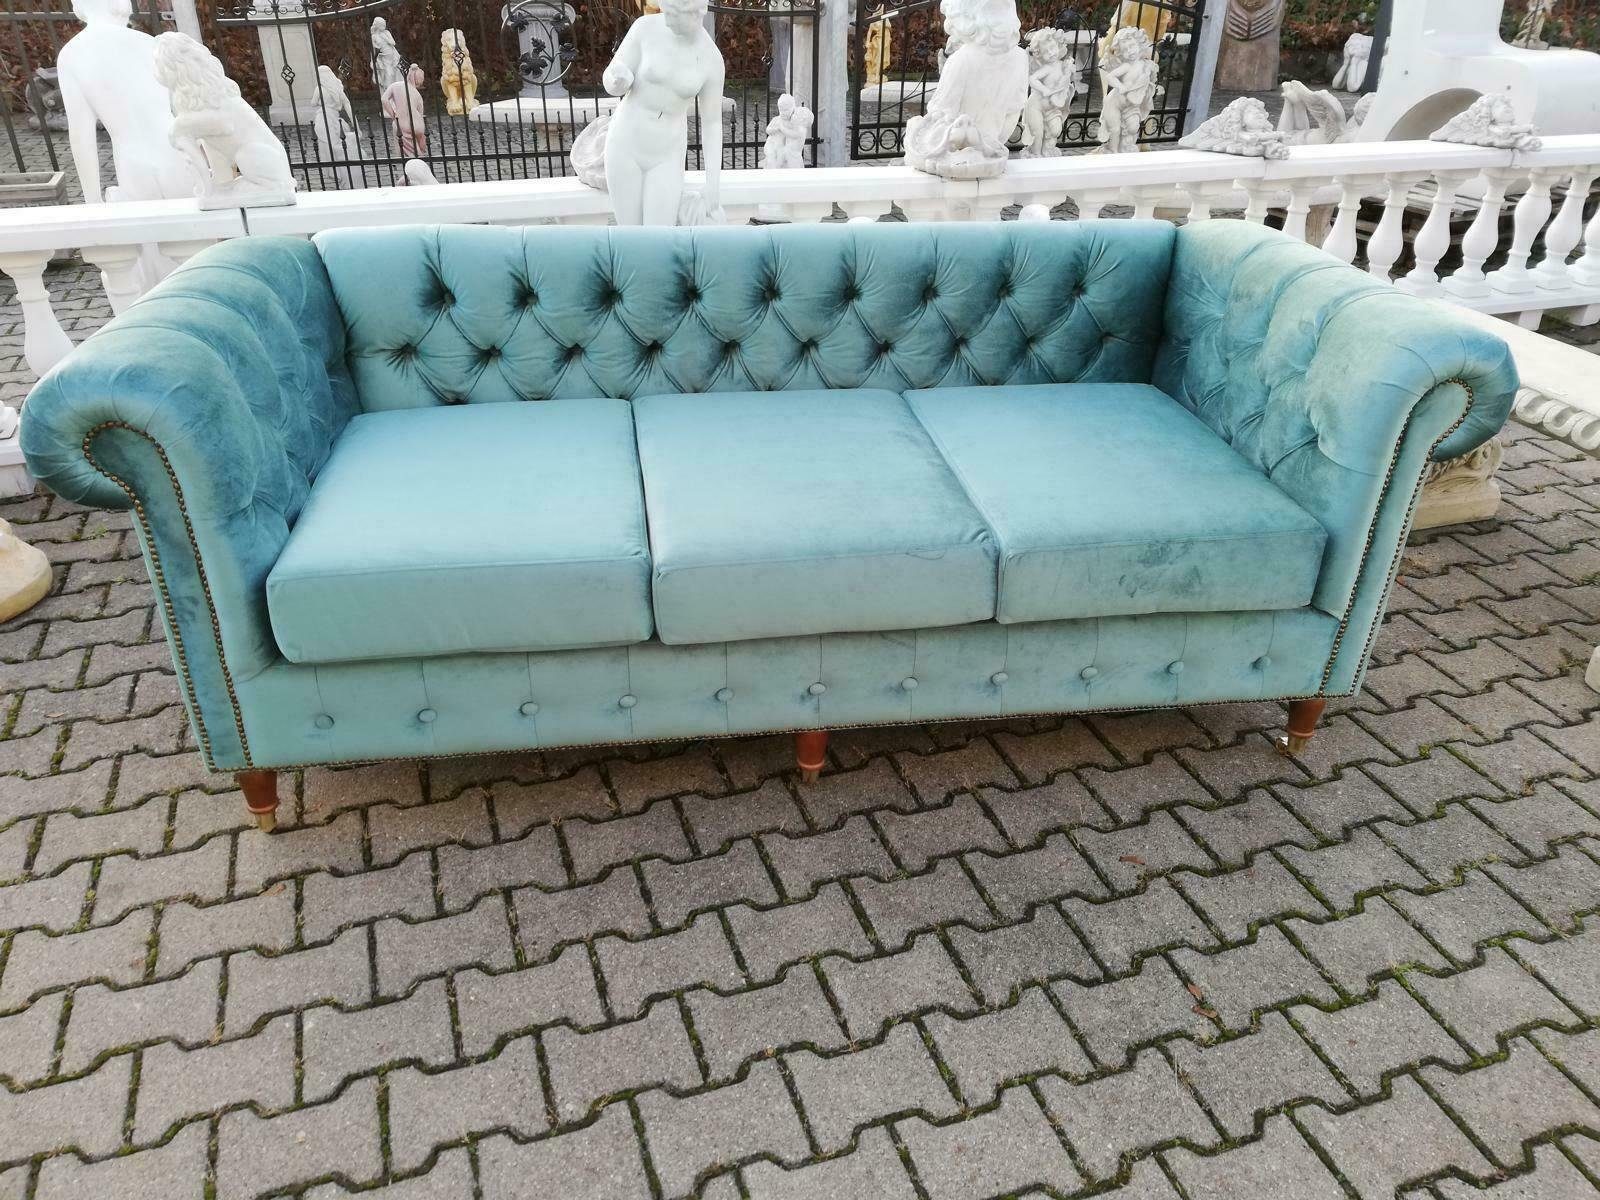 JVmoebel 3-Sitzer Design Chesterfield Sofagarnitur 3-Sitzer Stoff Couch Blau Polster, Made in Europe